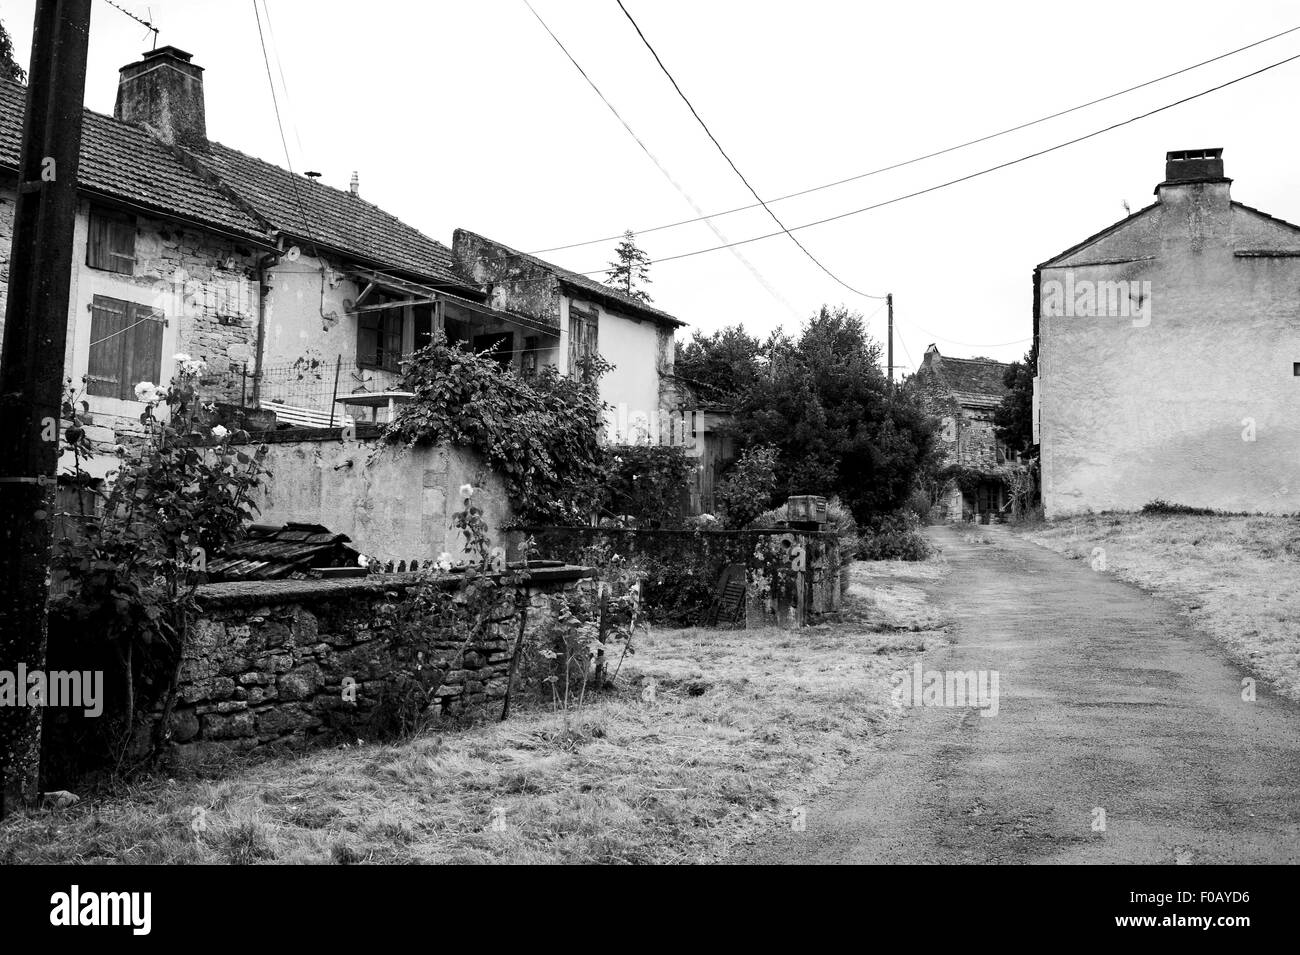 Vieux bâtiments de ferme à Frayssinet-le-gelat dans le Lot Région Département de France Midi-Pyrenees Banque D'Images